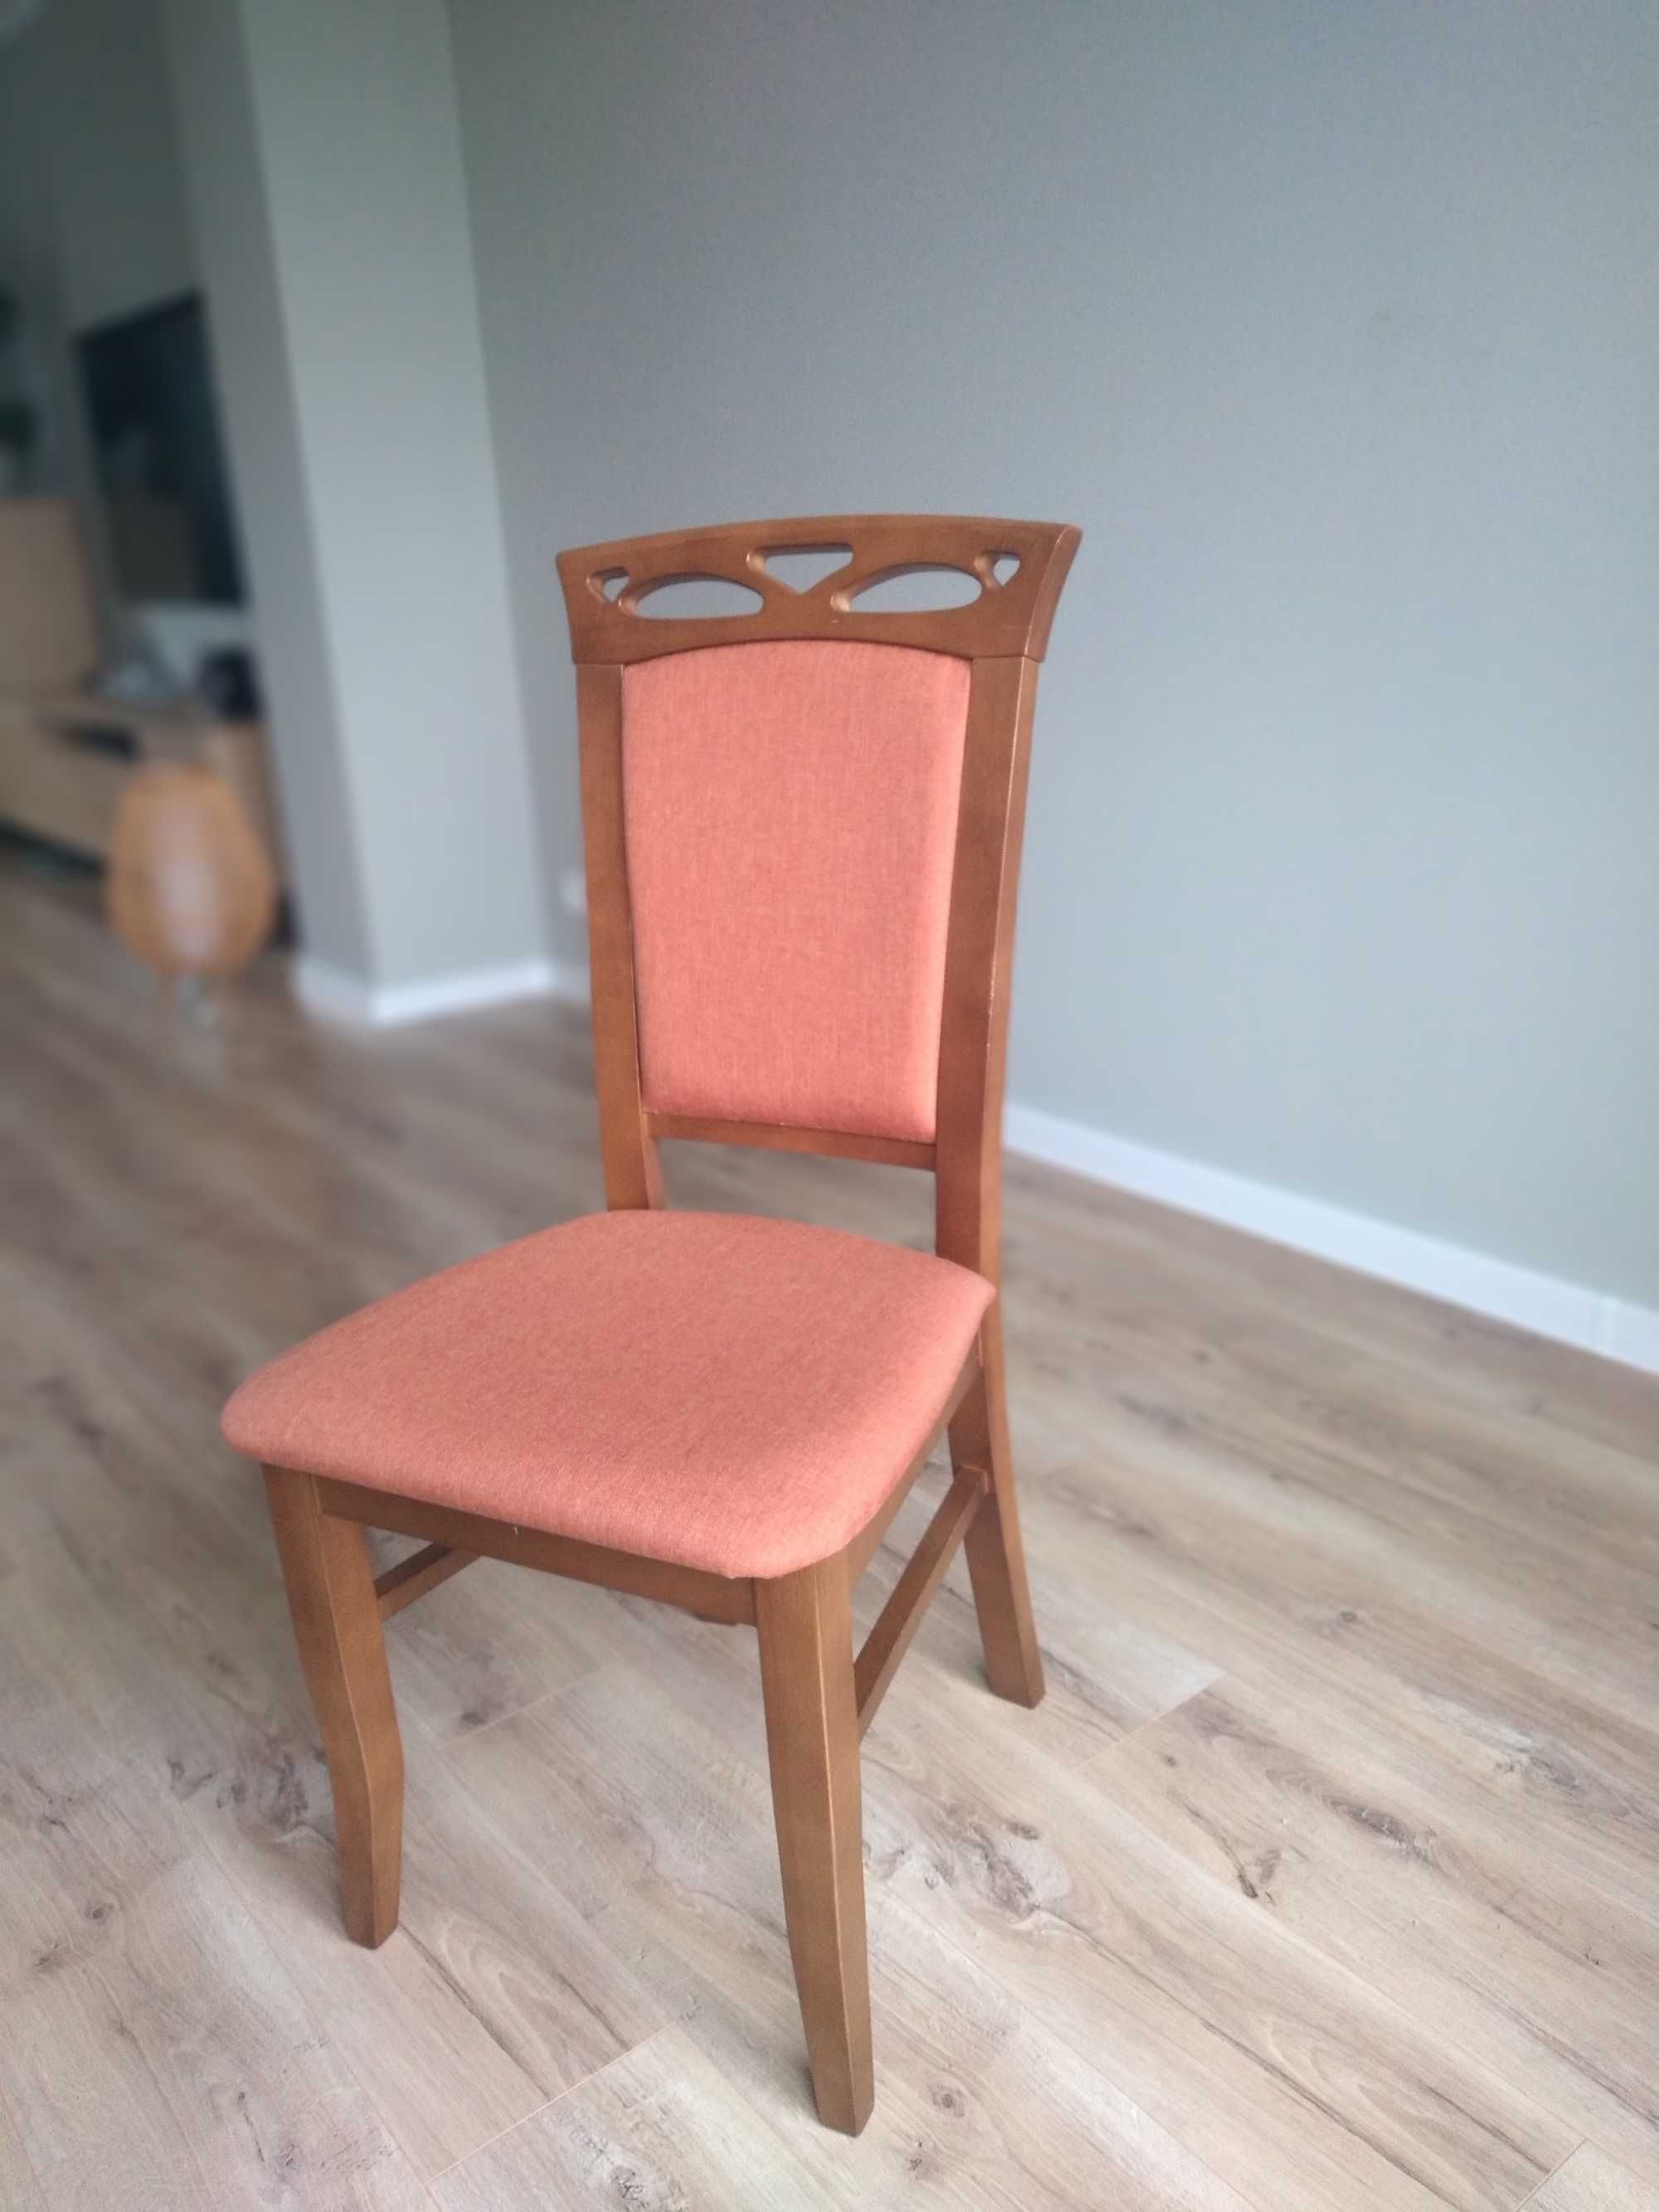 Krzesla, 2 sztuki, rama kolor orzech